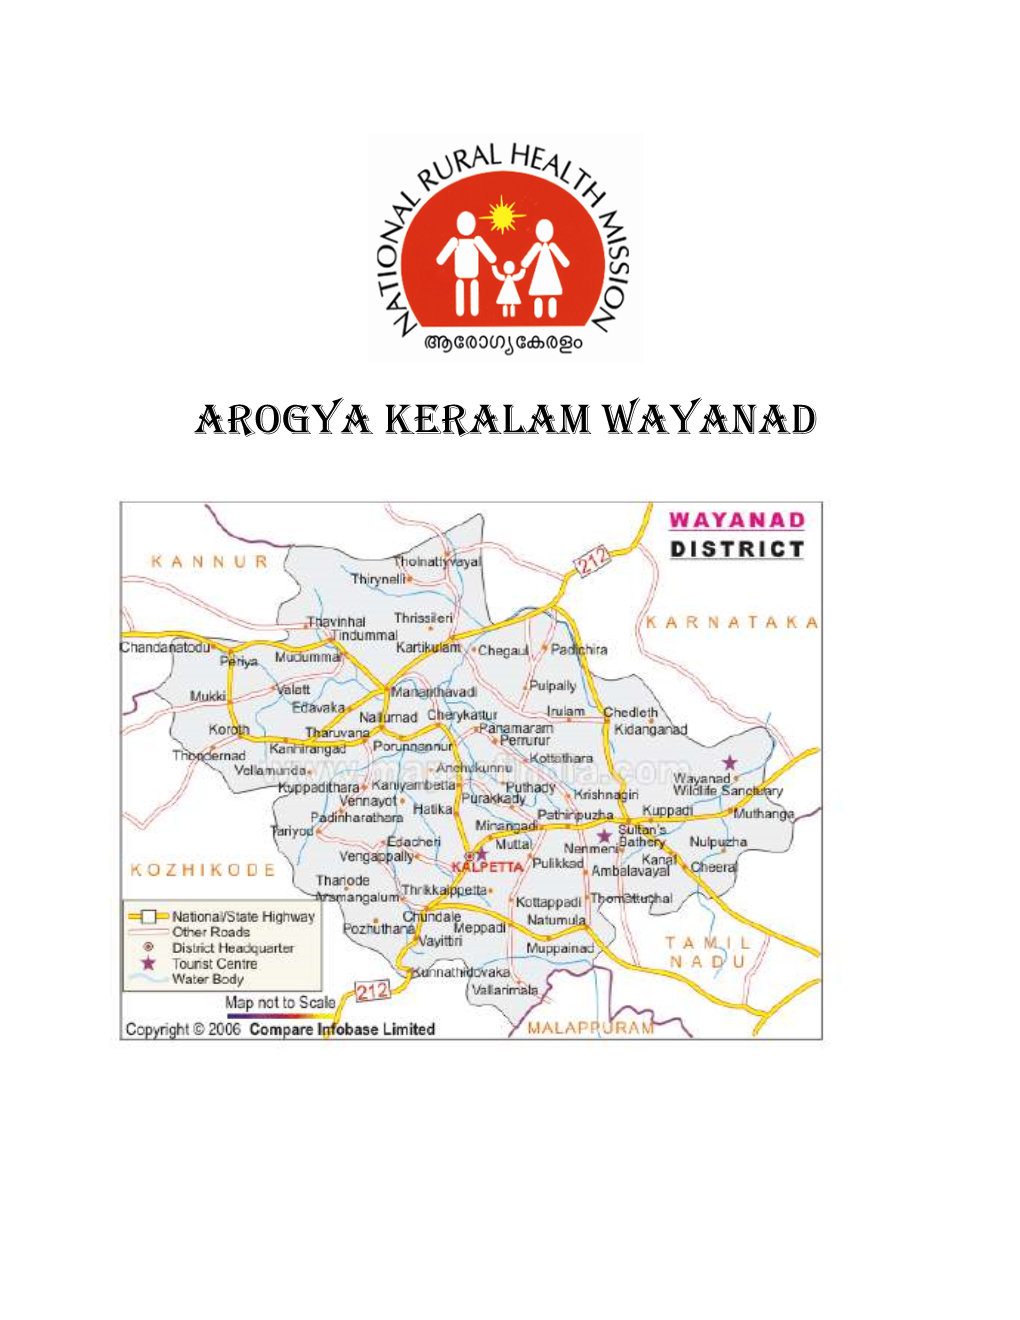 Arogya Keralam Wayanad